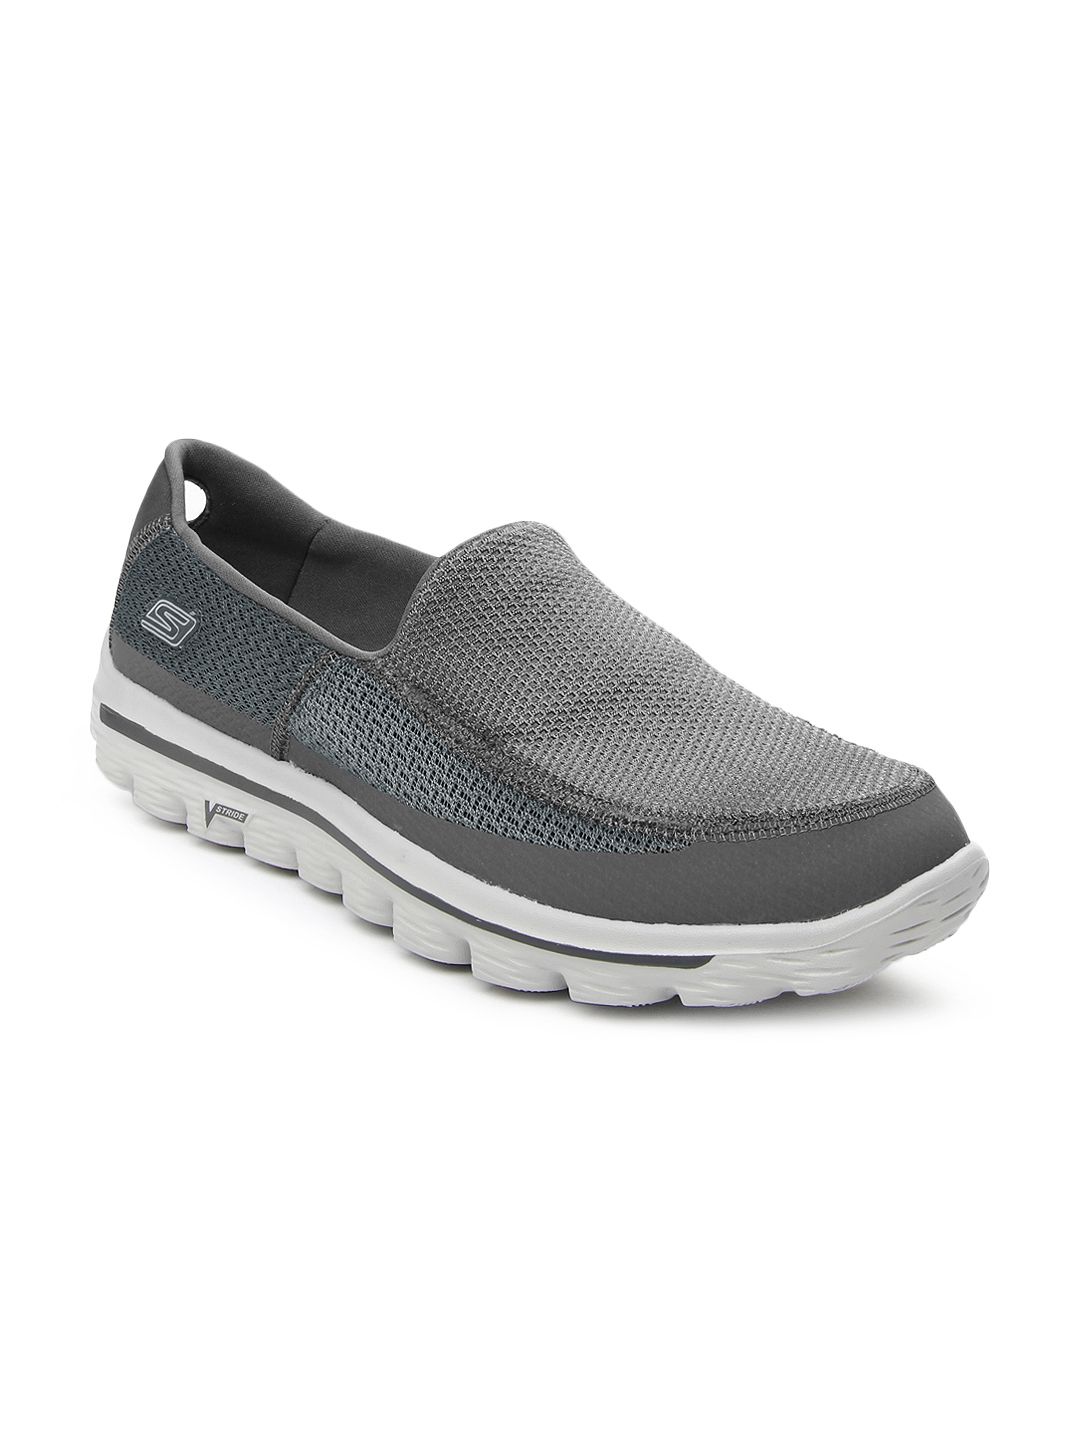 Buy Skechers Men Grey Go Walk 2 Sports Shoes - 634 - Footwear for Men ...